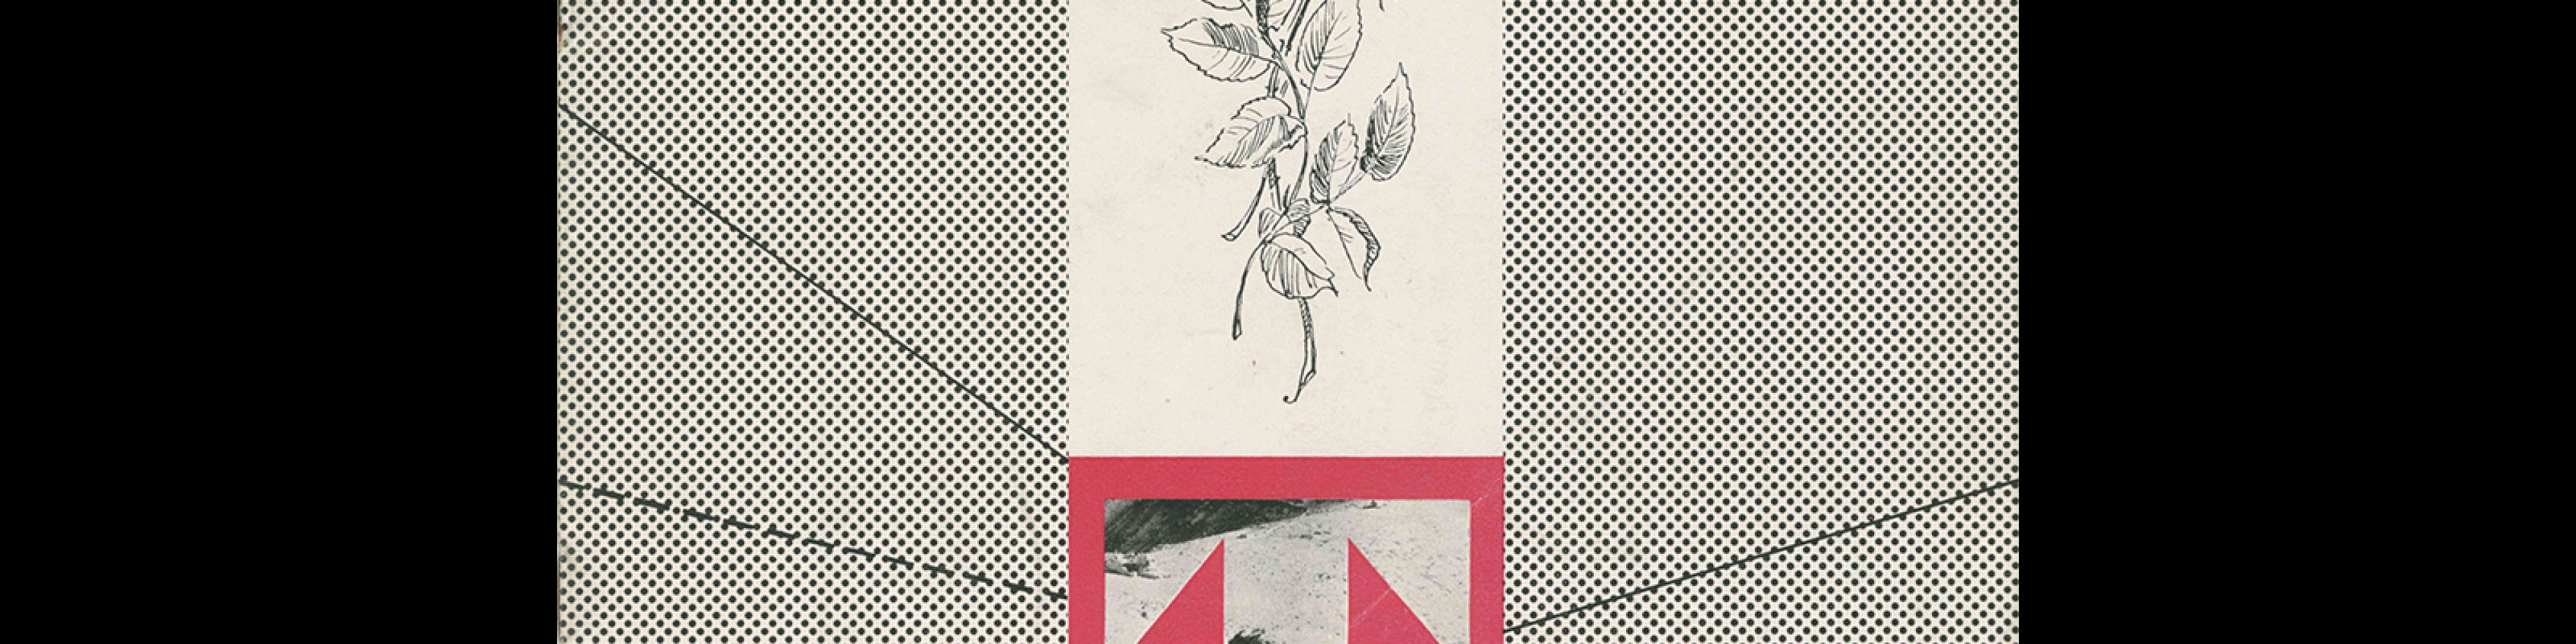 Typografia, ročník 59, 07, 1956. Cover design Václav Kouba